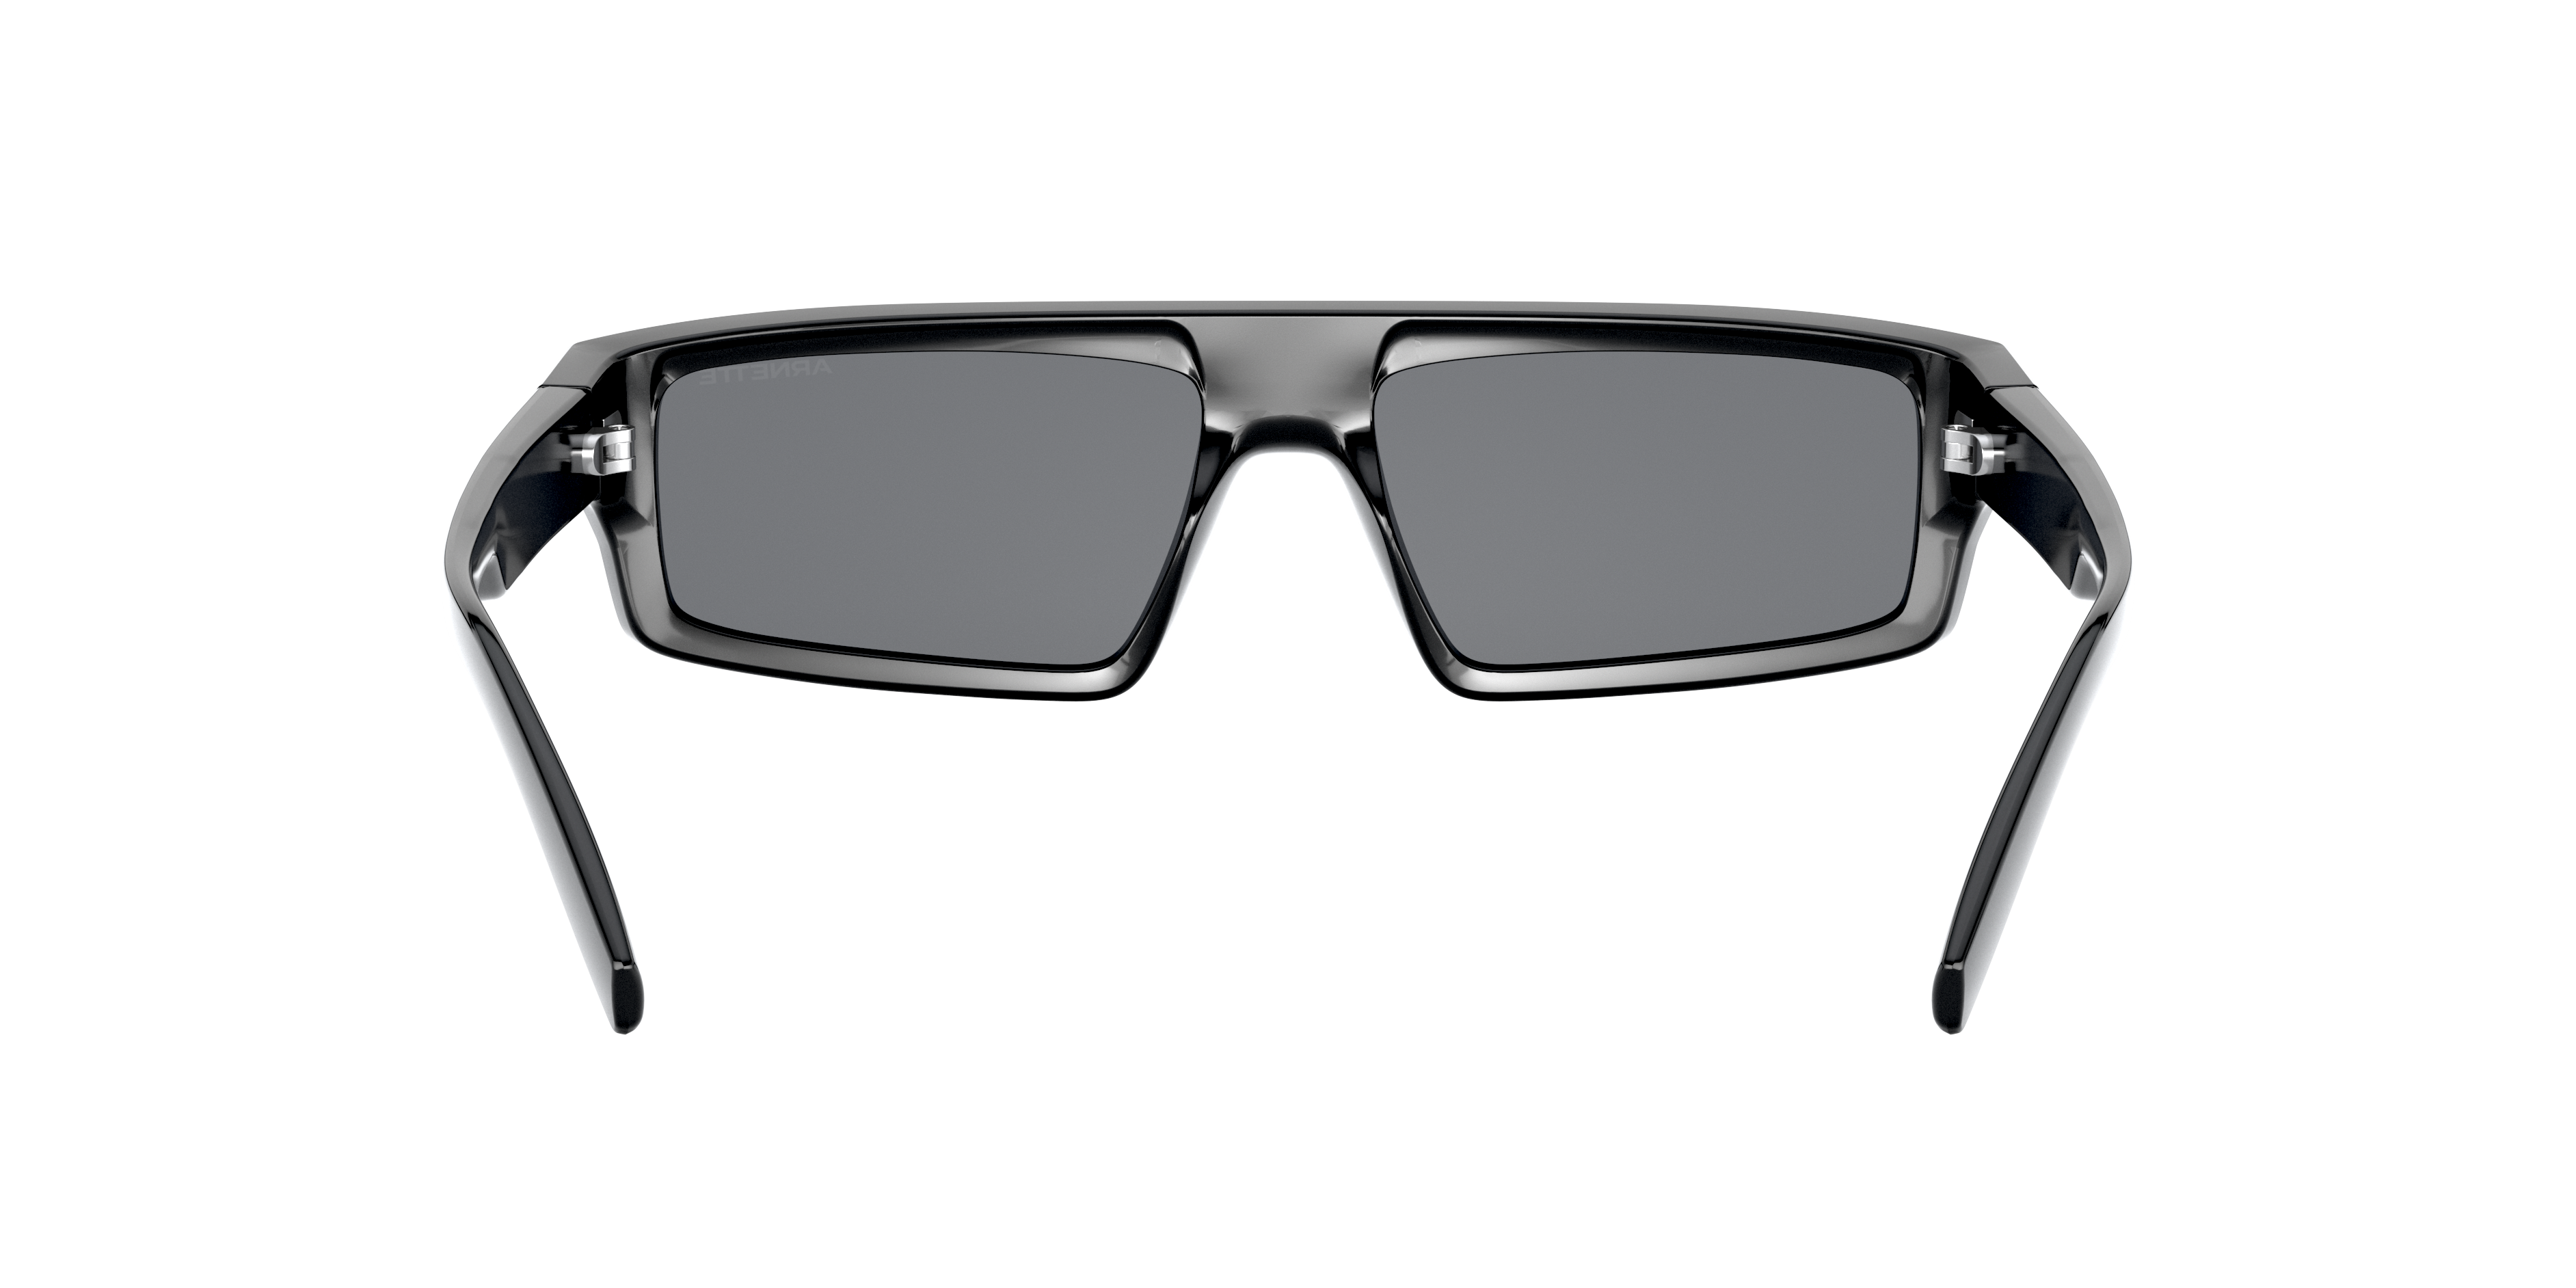 Detail02 Arnette Syke AN 4268 Sunglasses Grey / Black